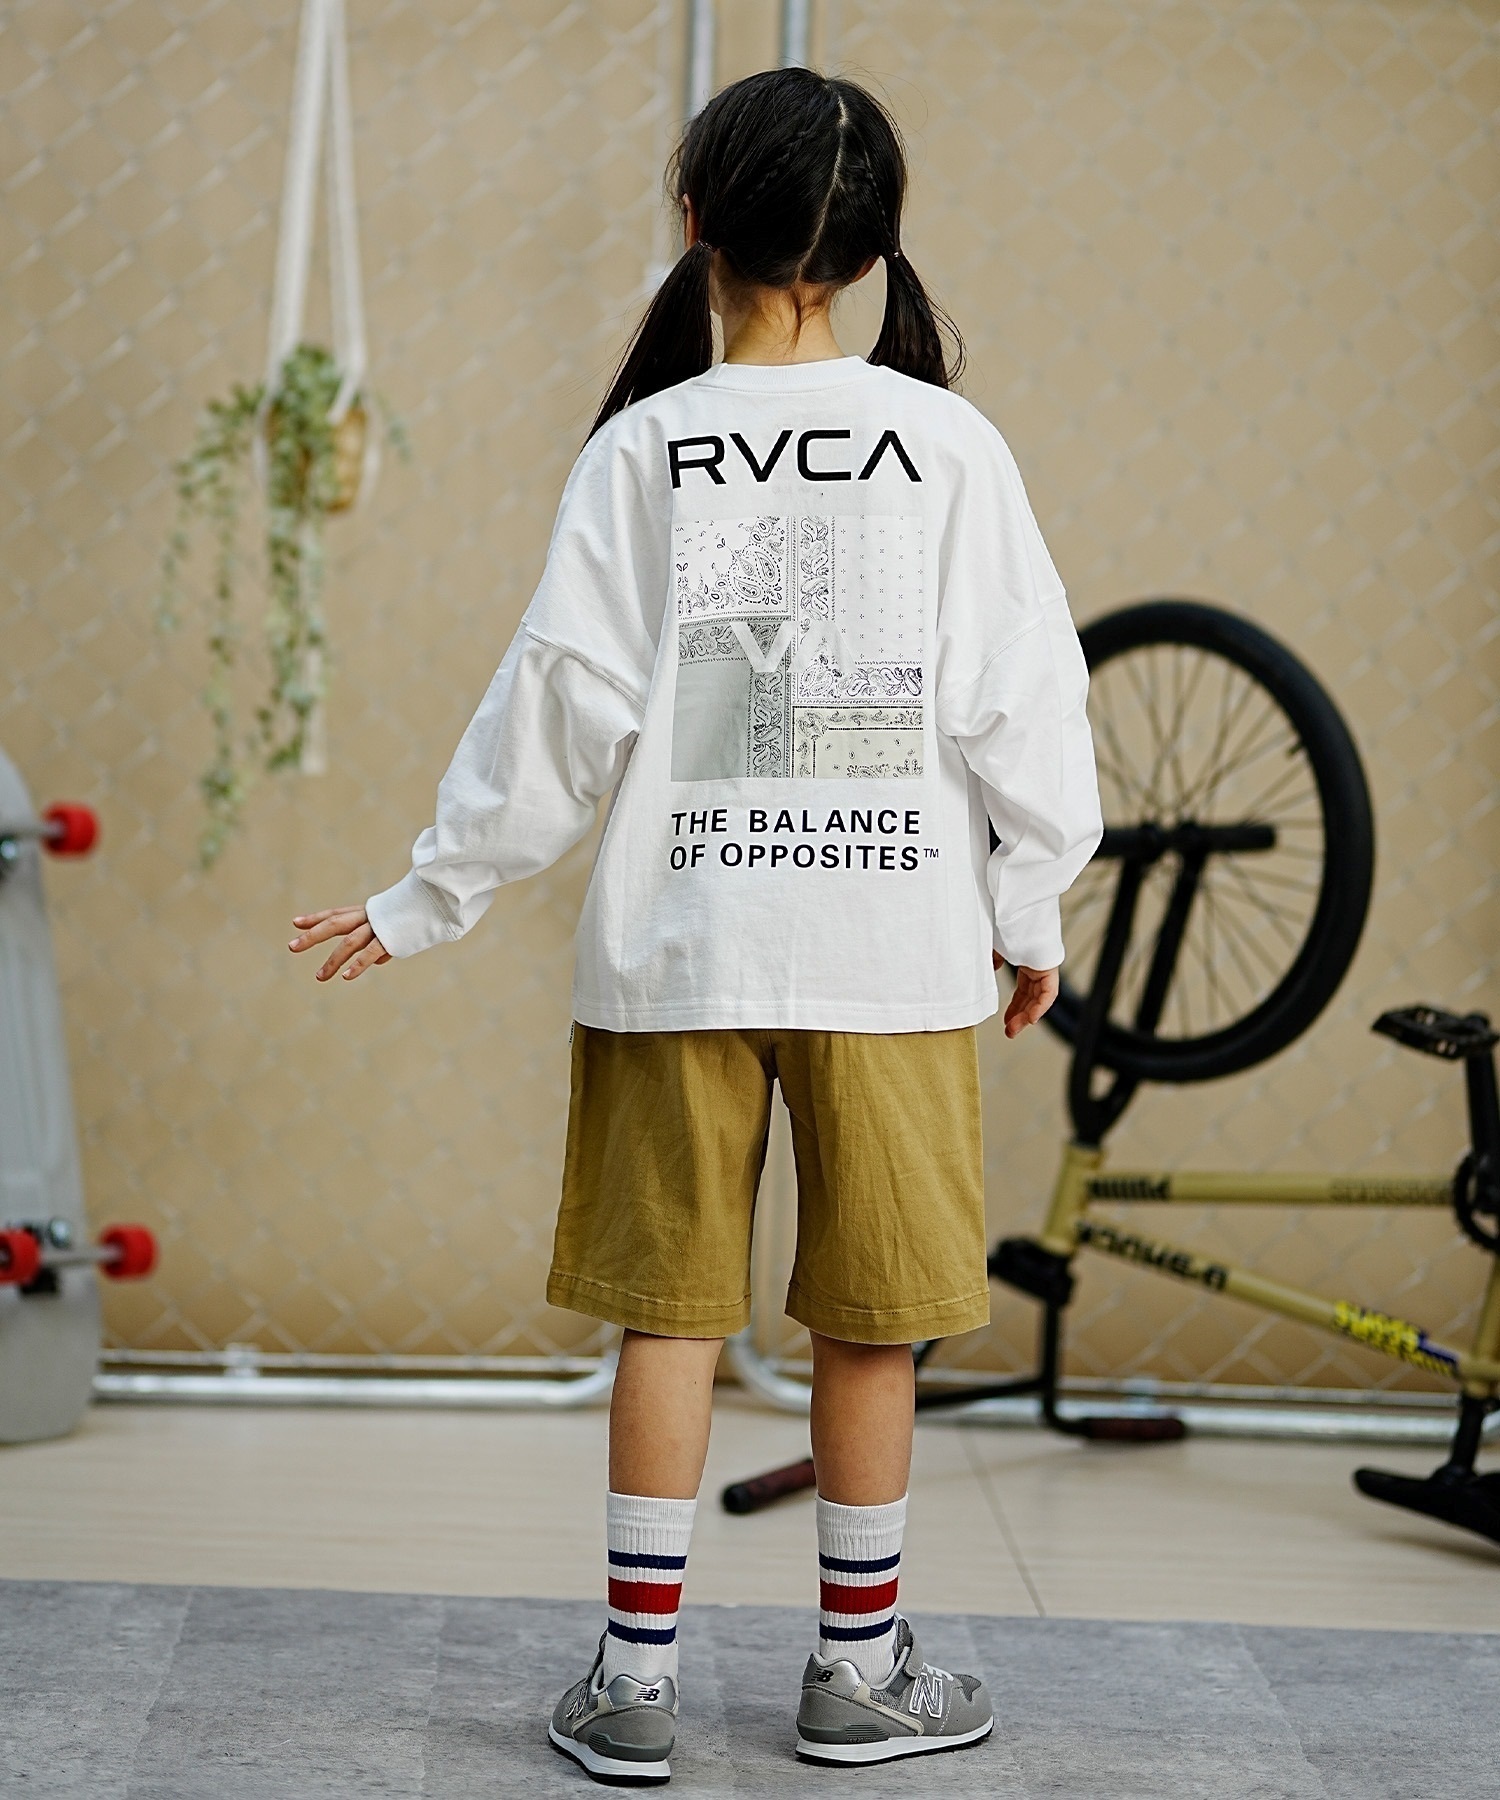 【クーポン対象】RVCA ルーカ キッズ ロングTシャツ ロンT バンダナ柄 130cm?160cm BE045-058(WHT-130cm)